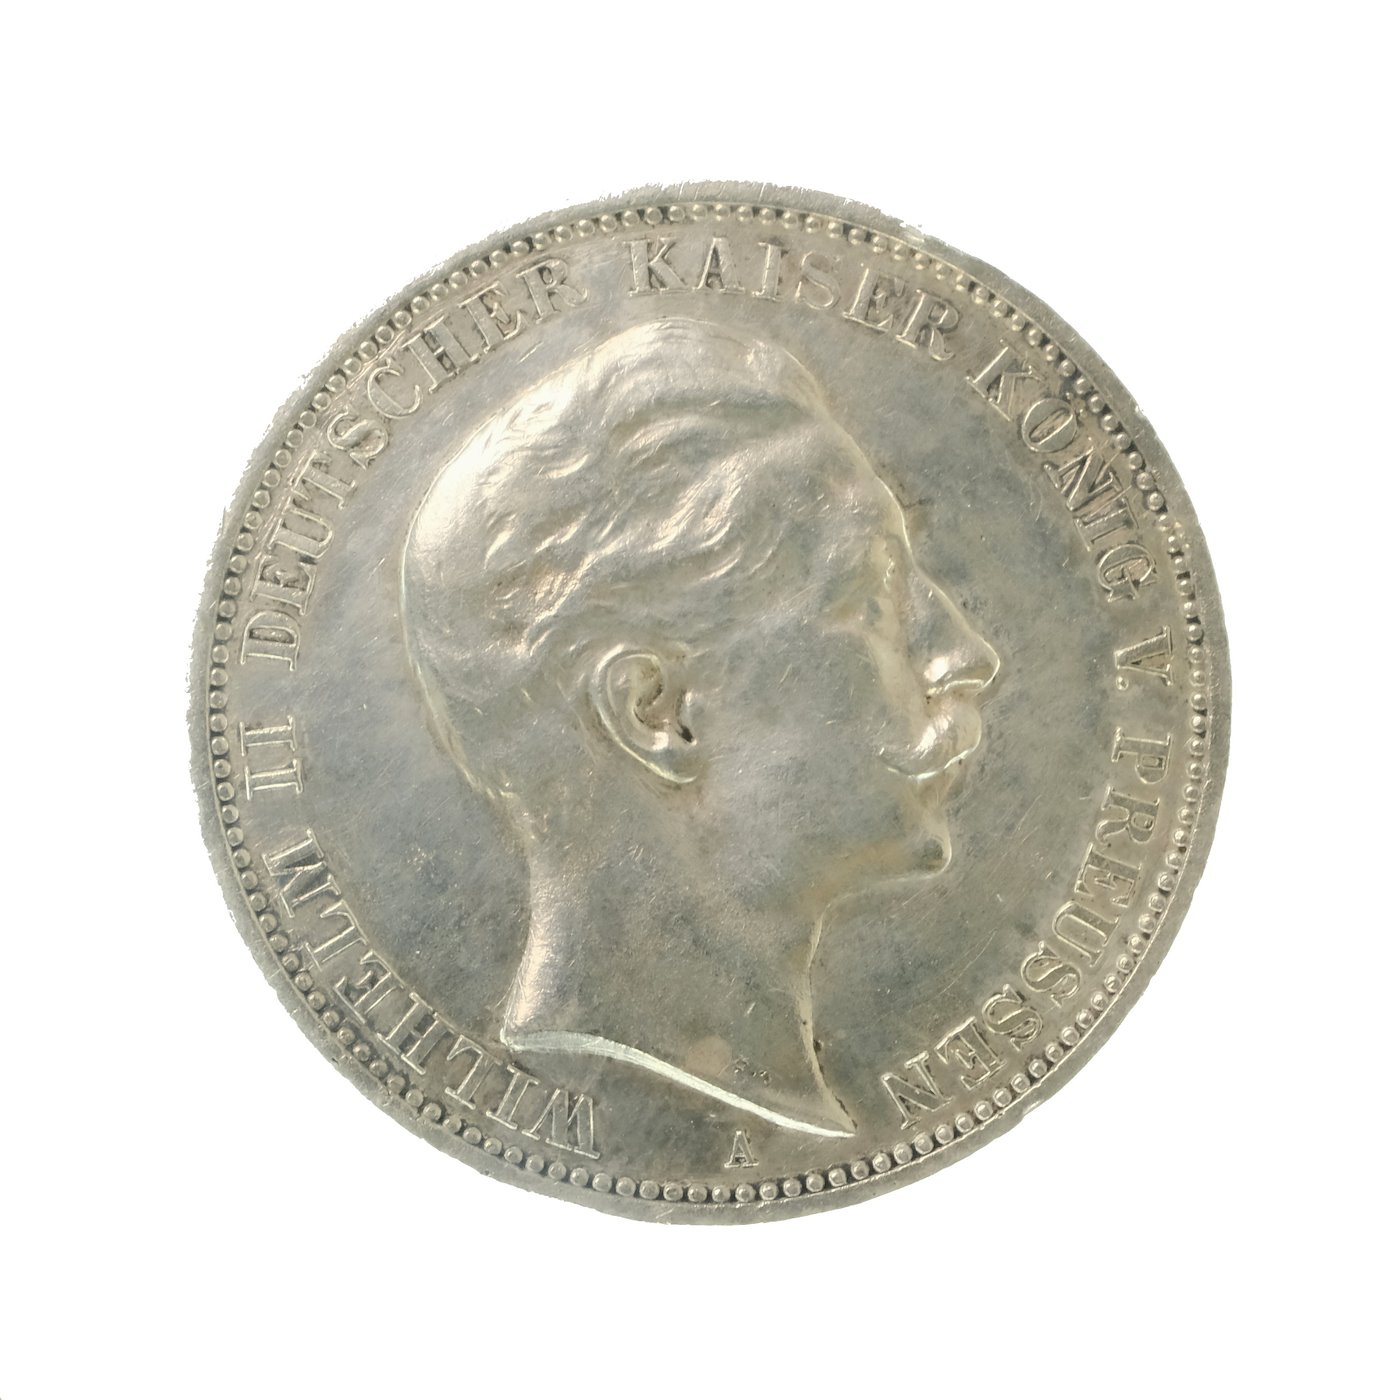 .. - Stříbrná 3 marka Prusko Wilhelm II. Německo 1912 A J113, stříbro 900/1000, hmotnost hrubá 16,667 g